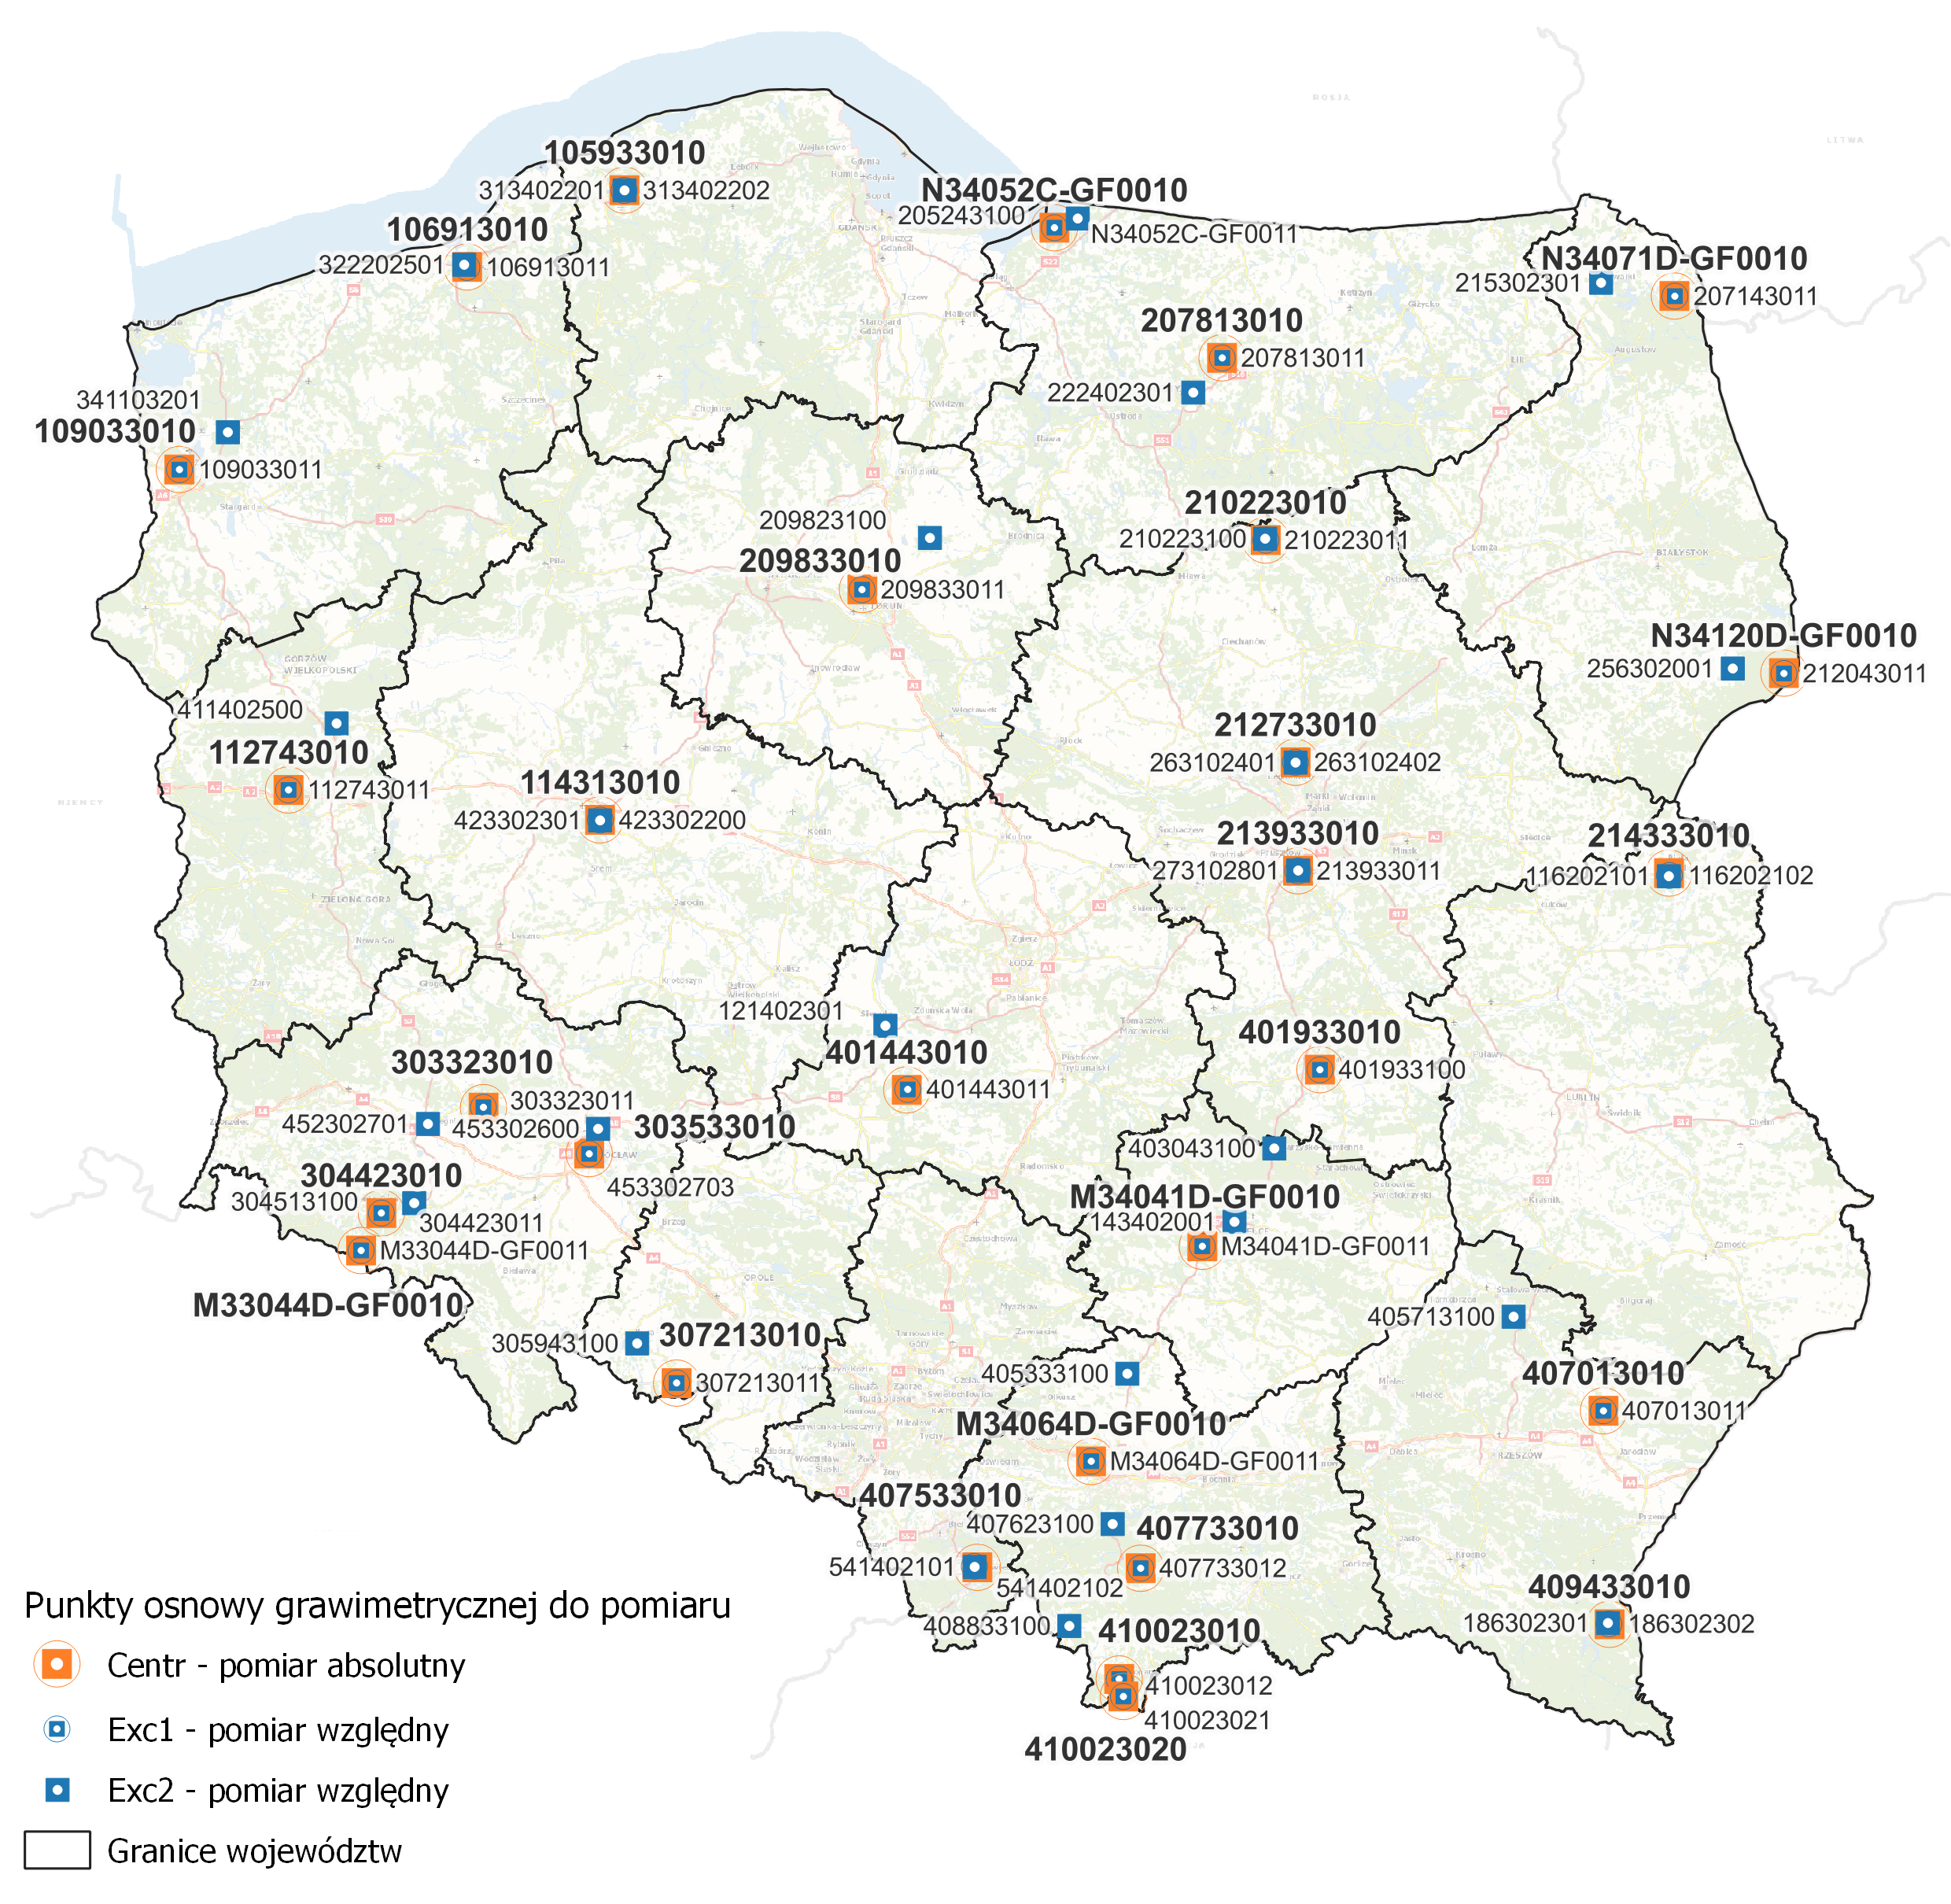 Ilustracja przedstawia mapę Polski z rozmieszczeniem punktów osnowy grawimetrycznej przewidzianych do opracowania w ramach podpisanej umowy.